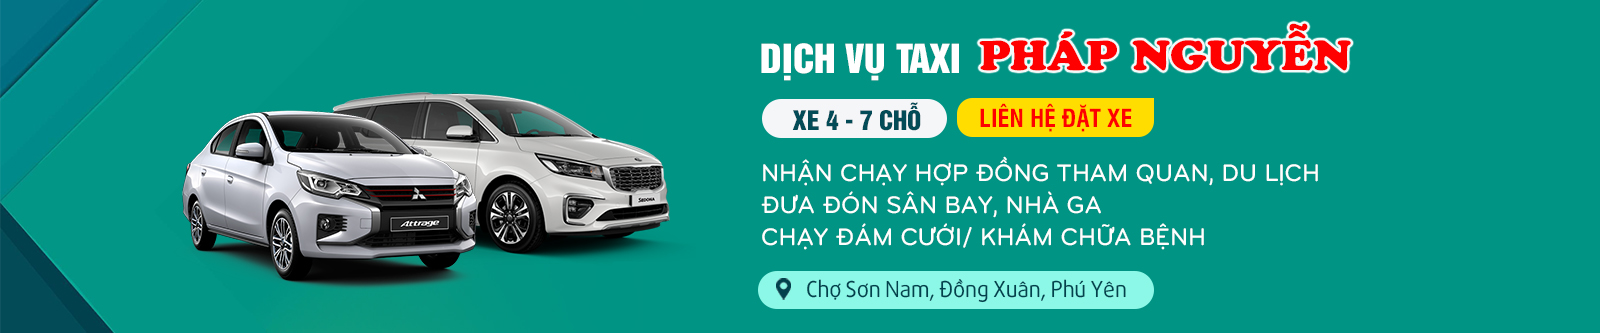 Taxi Pháp Nguyễn, Đồng Xuân, Phú Yên